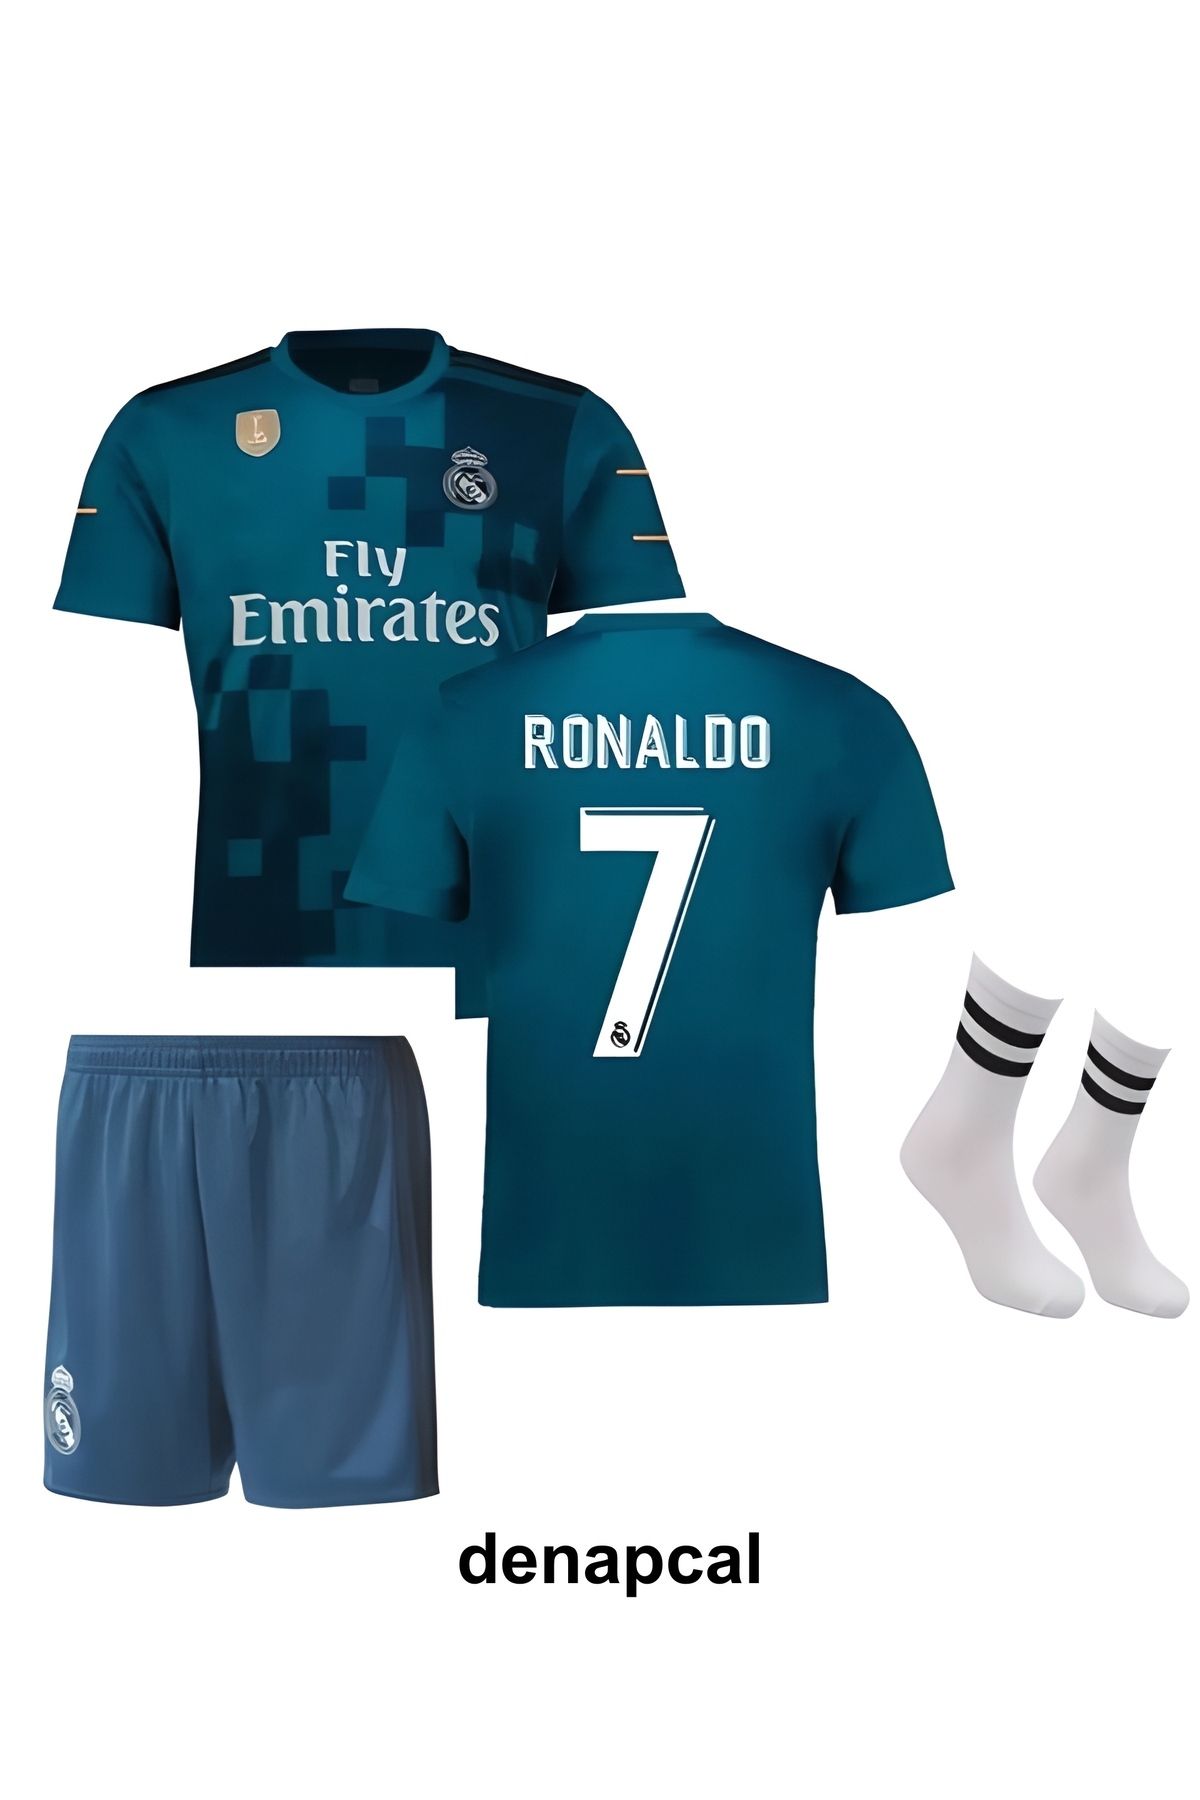 DENAPCAL Ronaldo Turkuaz 2018 Real Madrid Deplasman Futbol Çoçuk Forması 3'lü Set(FORMA,ŞORT VE ÇORAP)